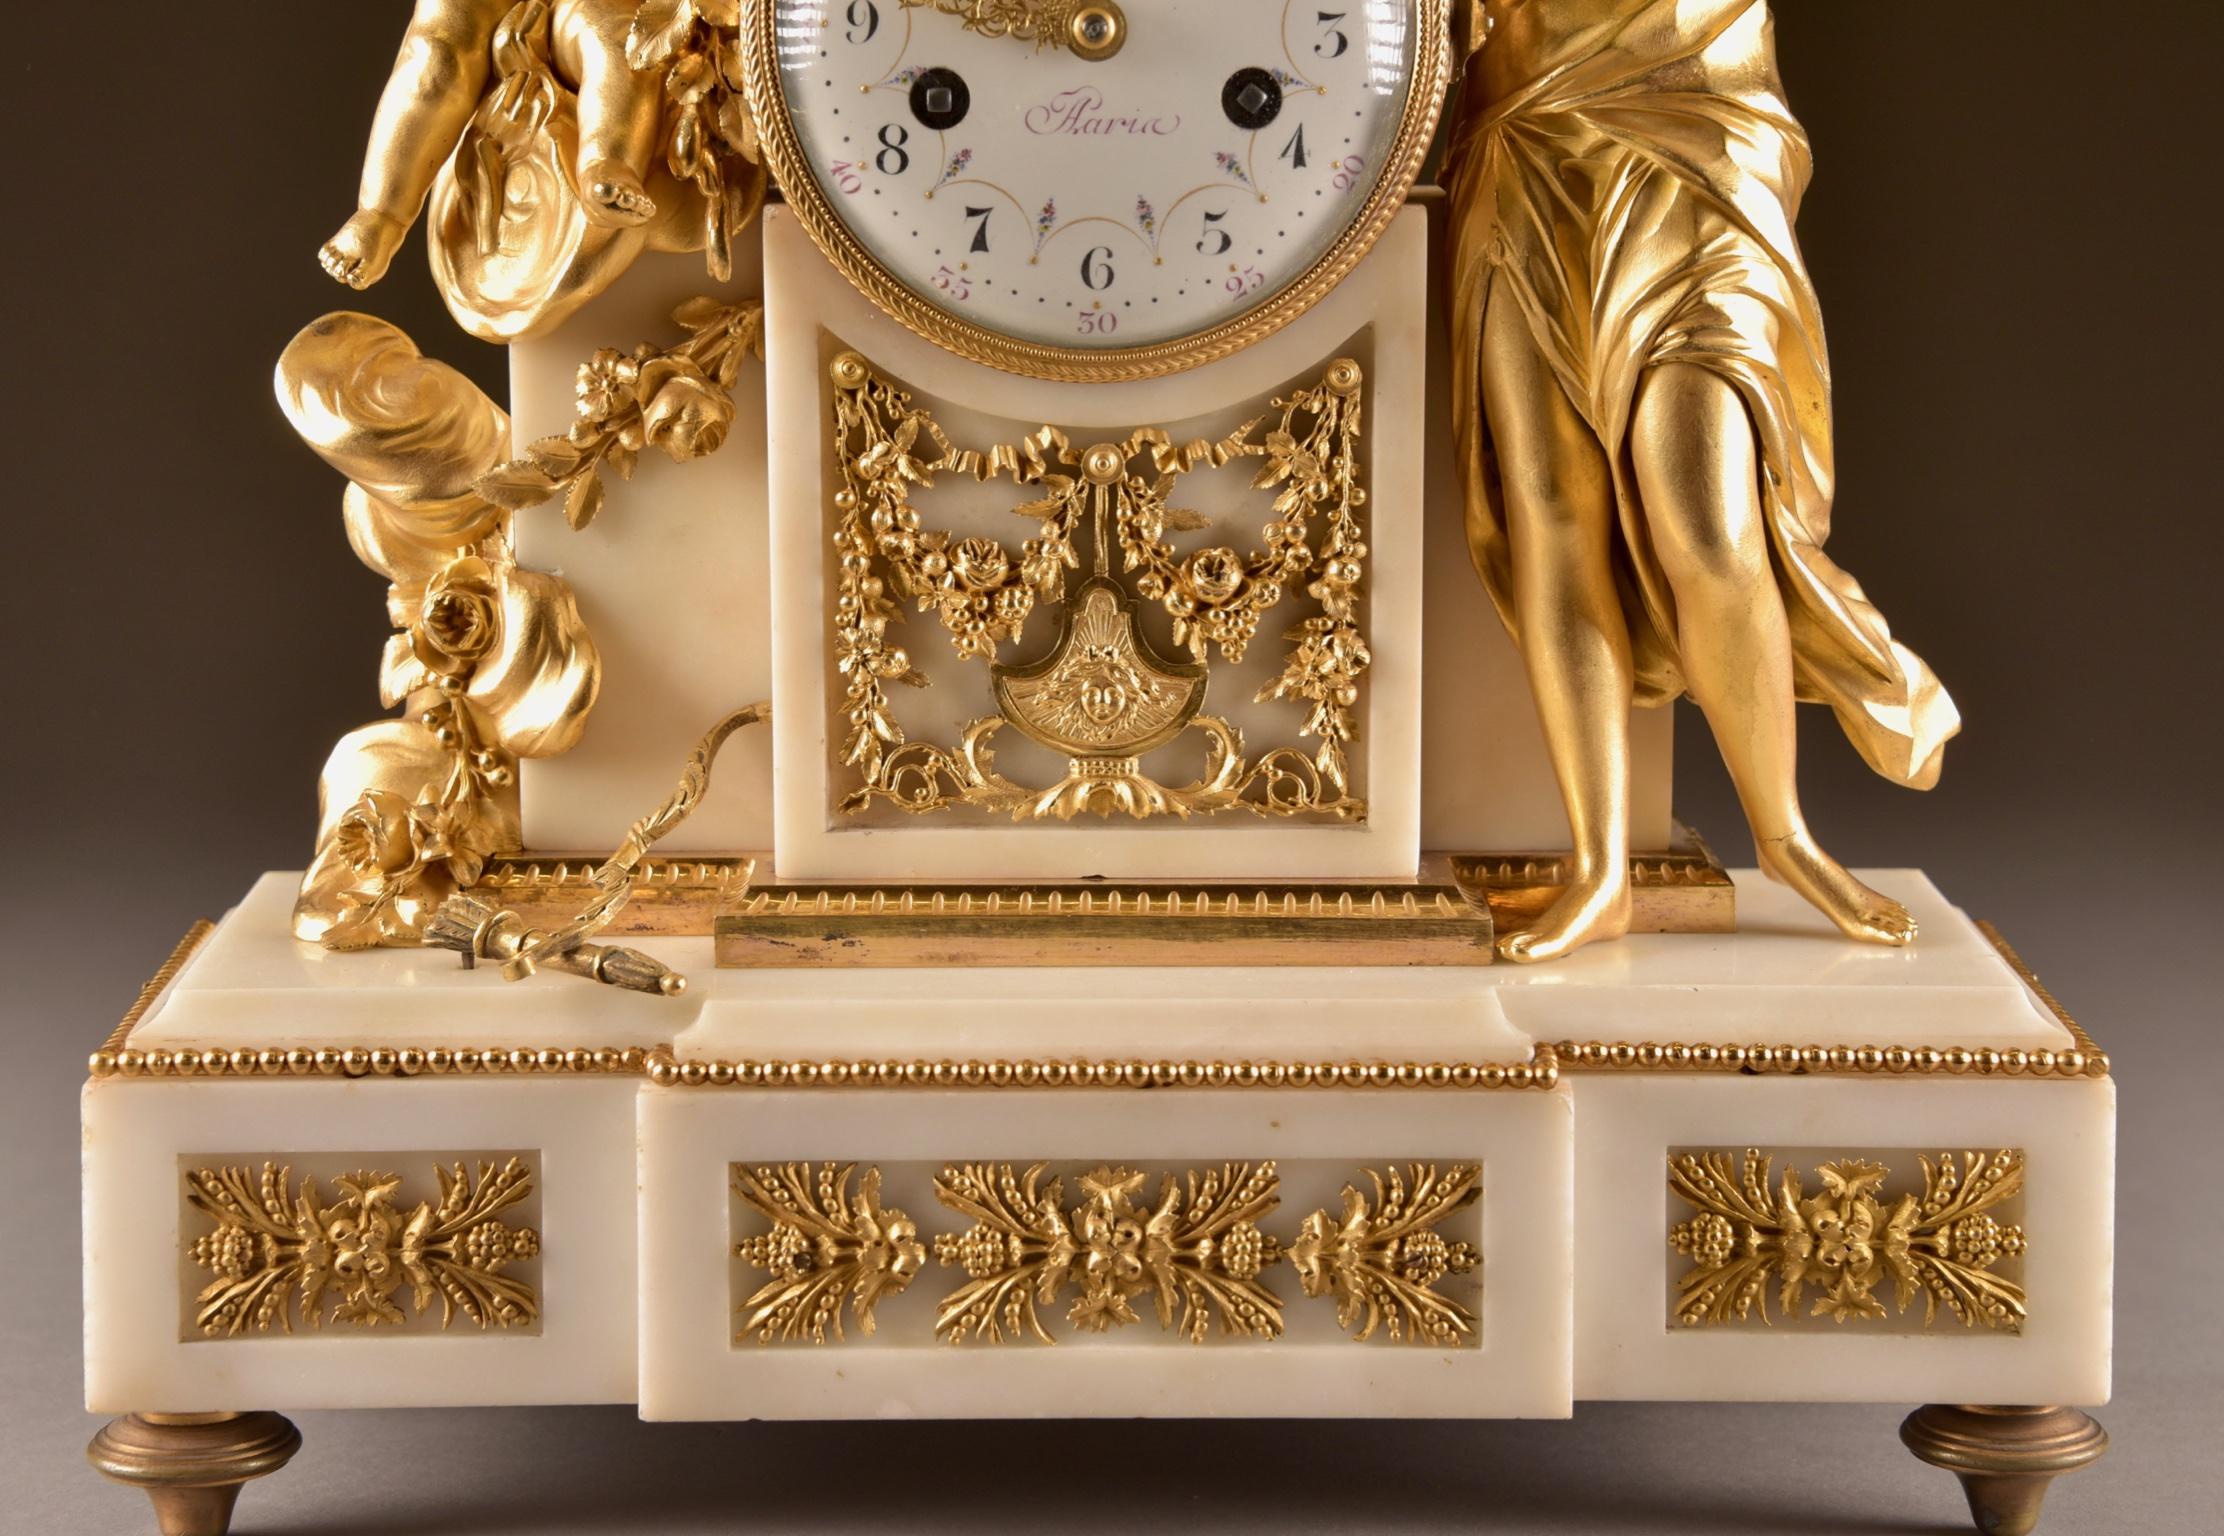 French Large Louis XVI clock (1780), Venus and cherub, Amor wird seiner Waffen beraubt